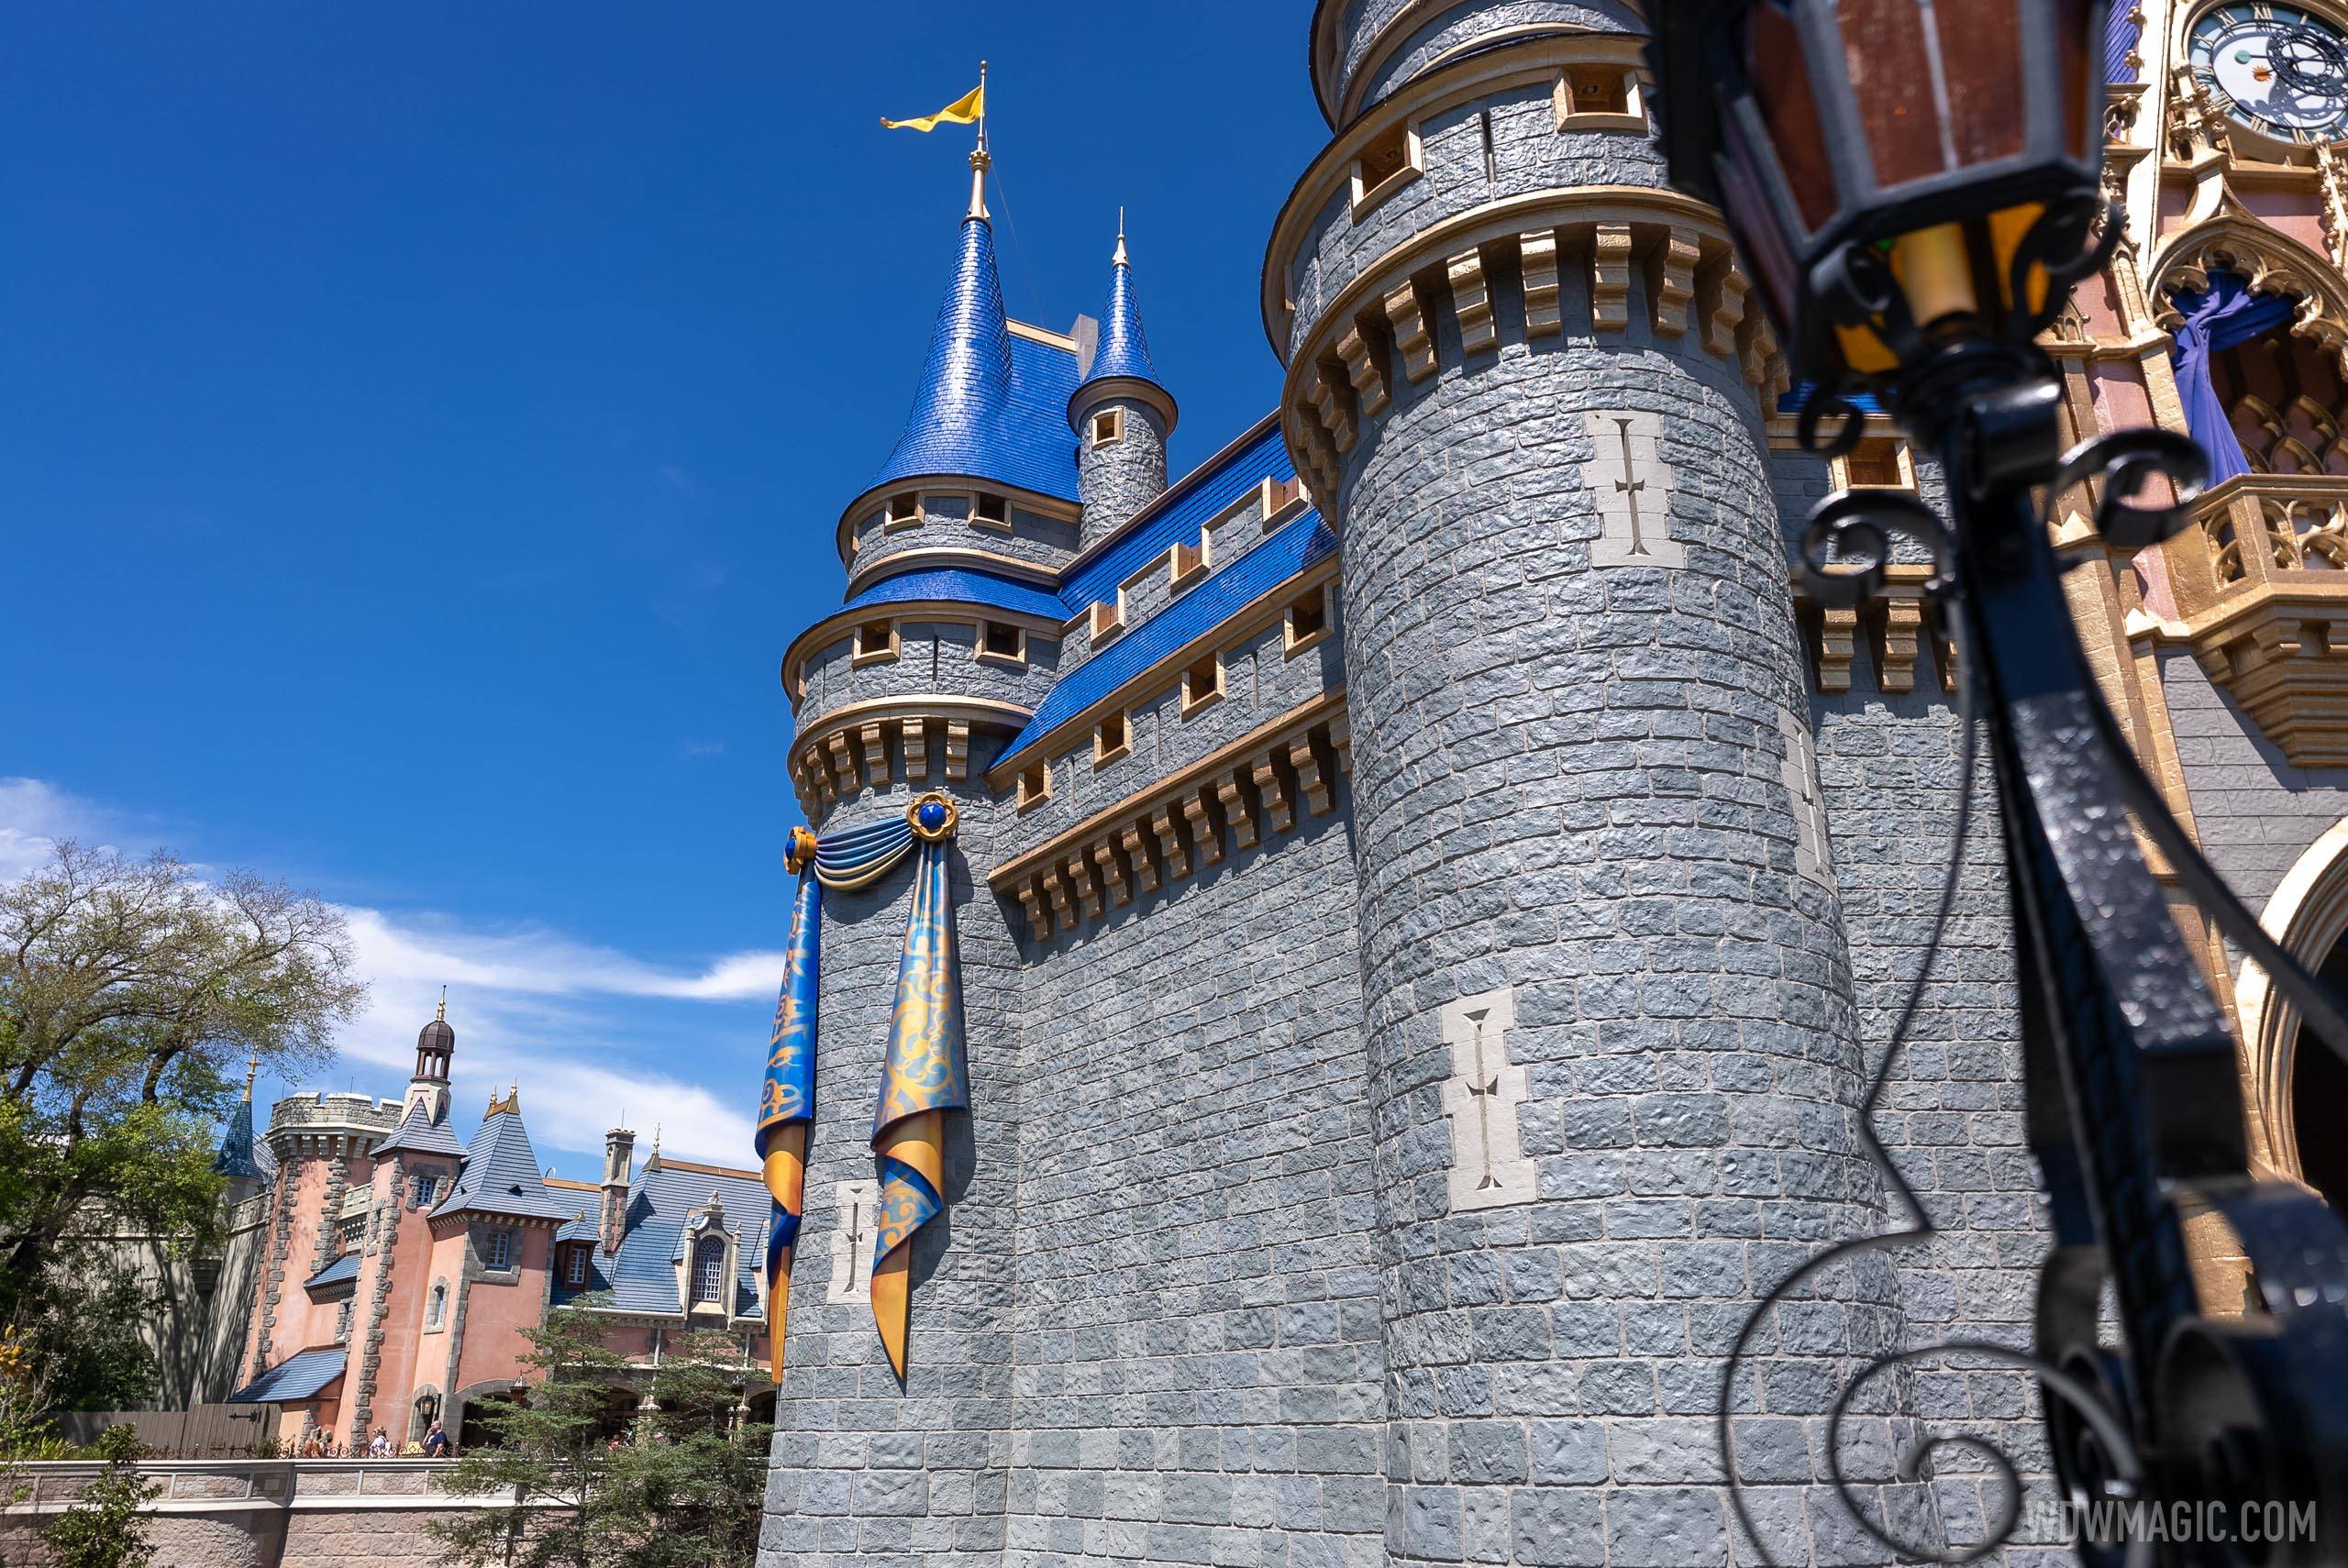 50th anniversary Cinderella Castle additions - March 23 2021